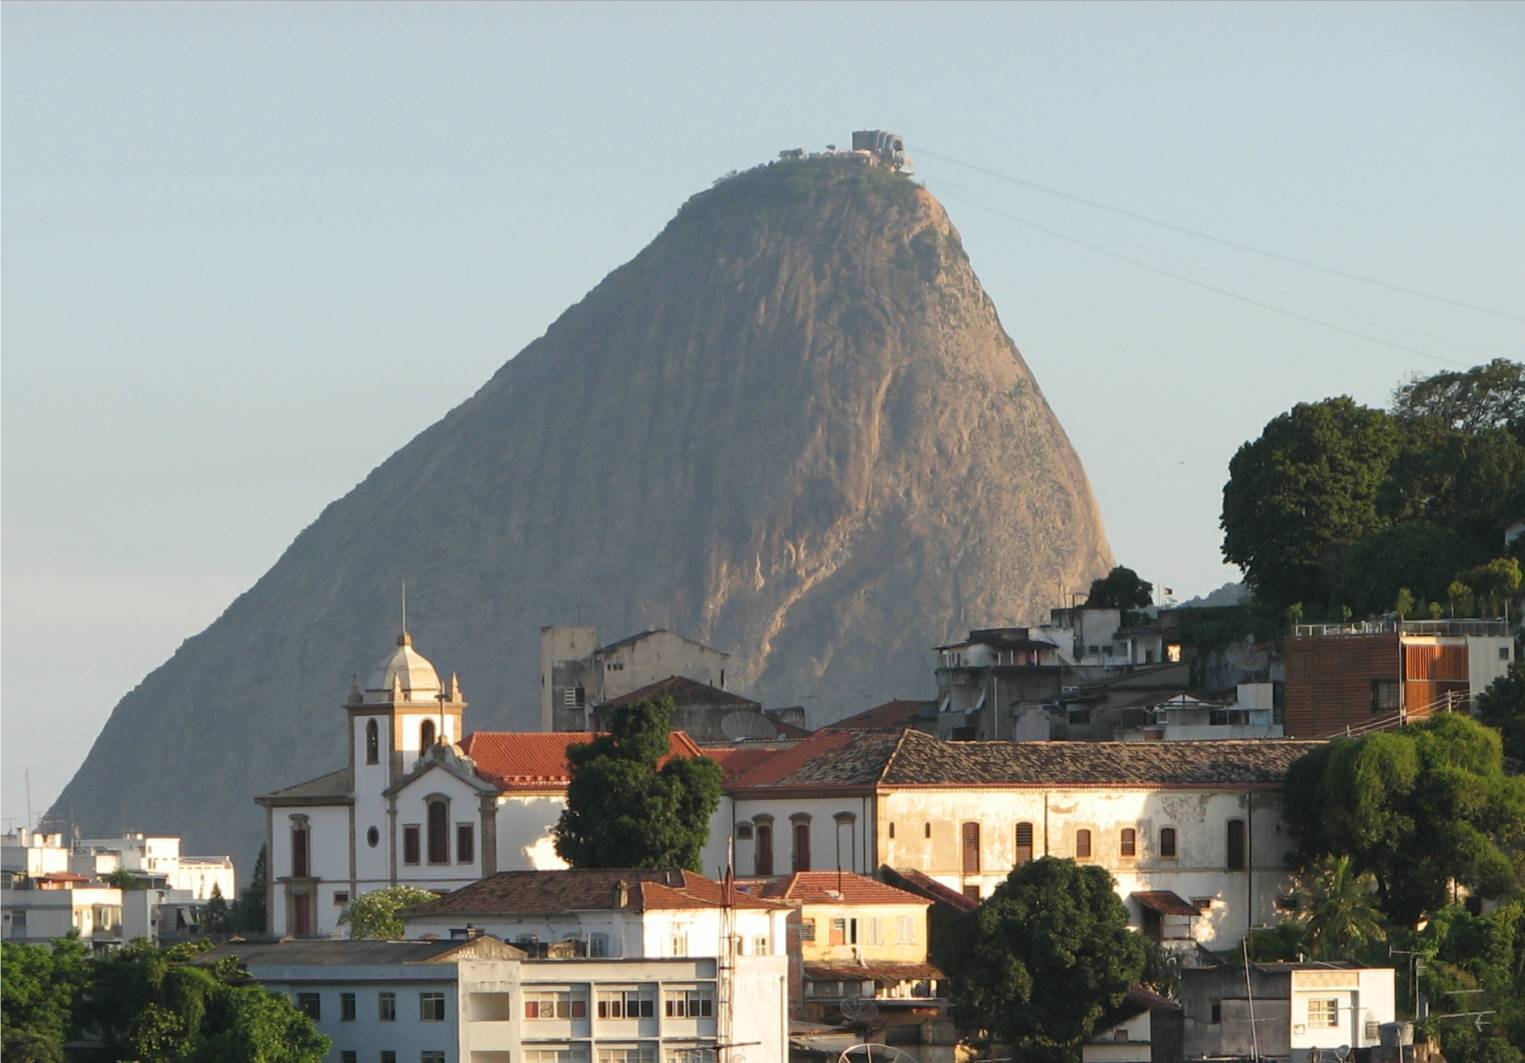 Seconda giornata di visita a Rio de Janeiro